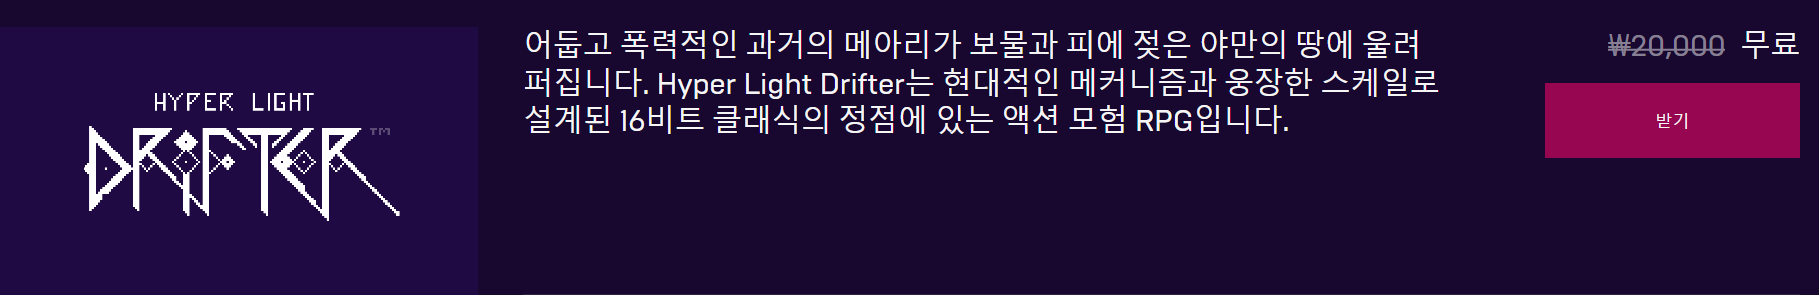 Screenshot_2019-08-16 Hyper Light Drifter - Hyper Light Drifter.png